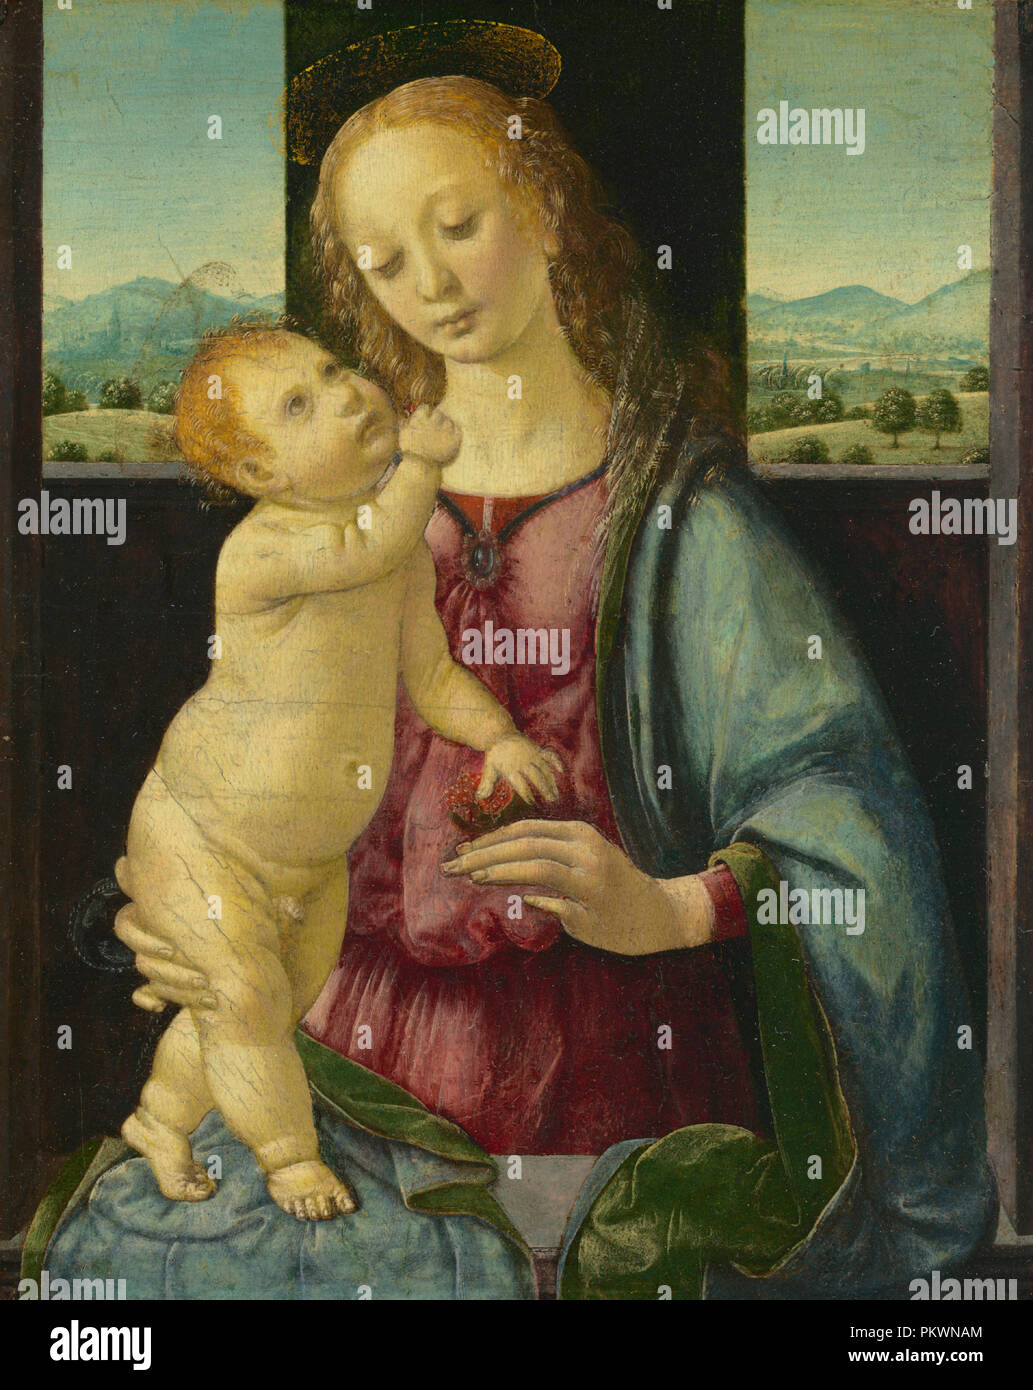 Madonna con Bambino e una melagrana. Data: 1475/1480. Dimensioni: complessivo: 16,5 x 13,4 cm (6 1/2 x 5 1/4 in.) incorniciato: 44,1 x 24,5 x 3,8 cm (17 3/8 x 9 5/8 x 1 1/2 in.). Medium: olio su pannello di pioppo. Museo: National Gallery of Art di Washington DC. Autore: Lorenzo di Credi. Foto Stock